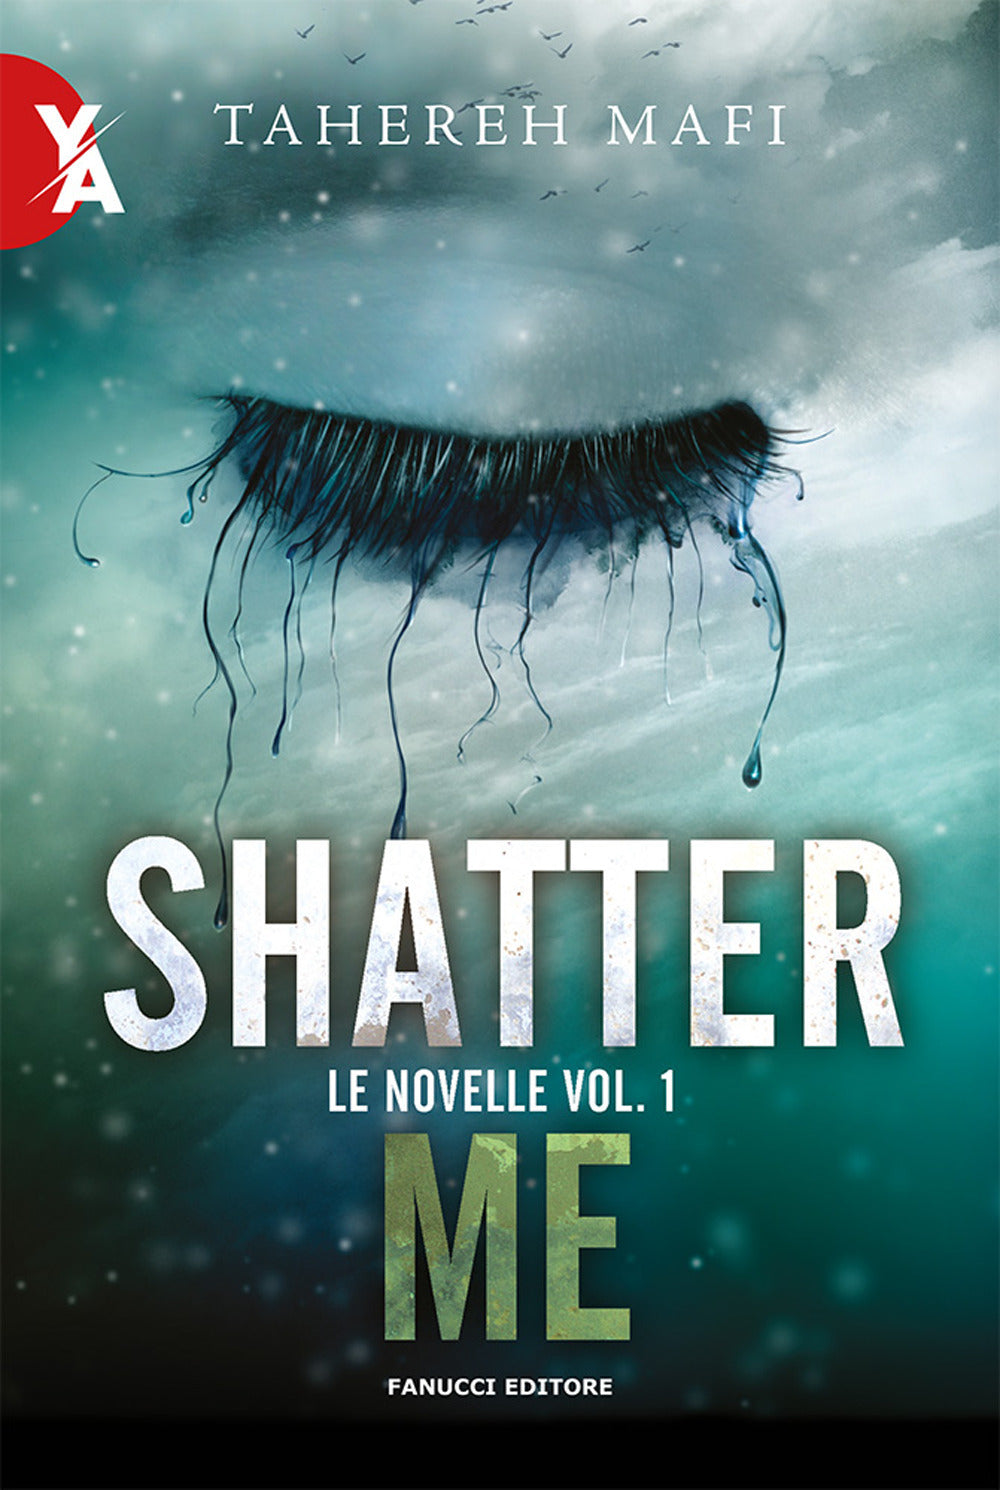 Le novelle. Shatter me. Vol. 1.